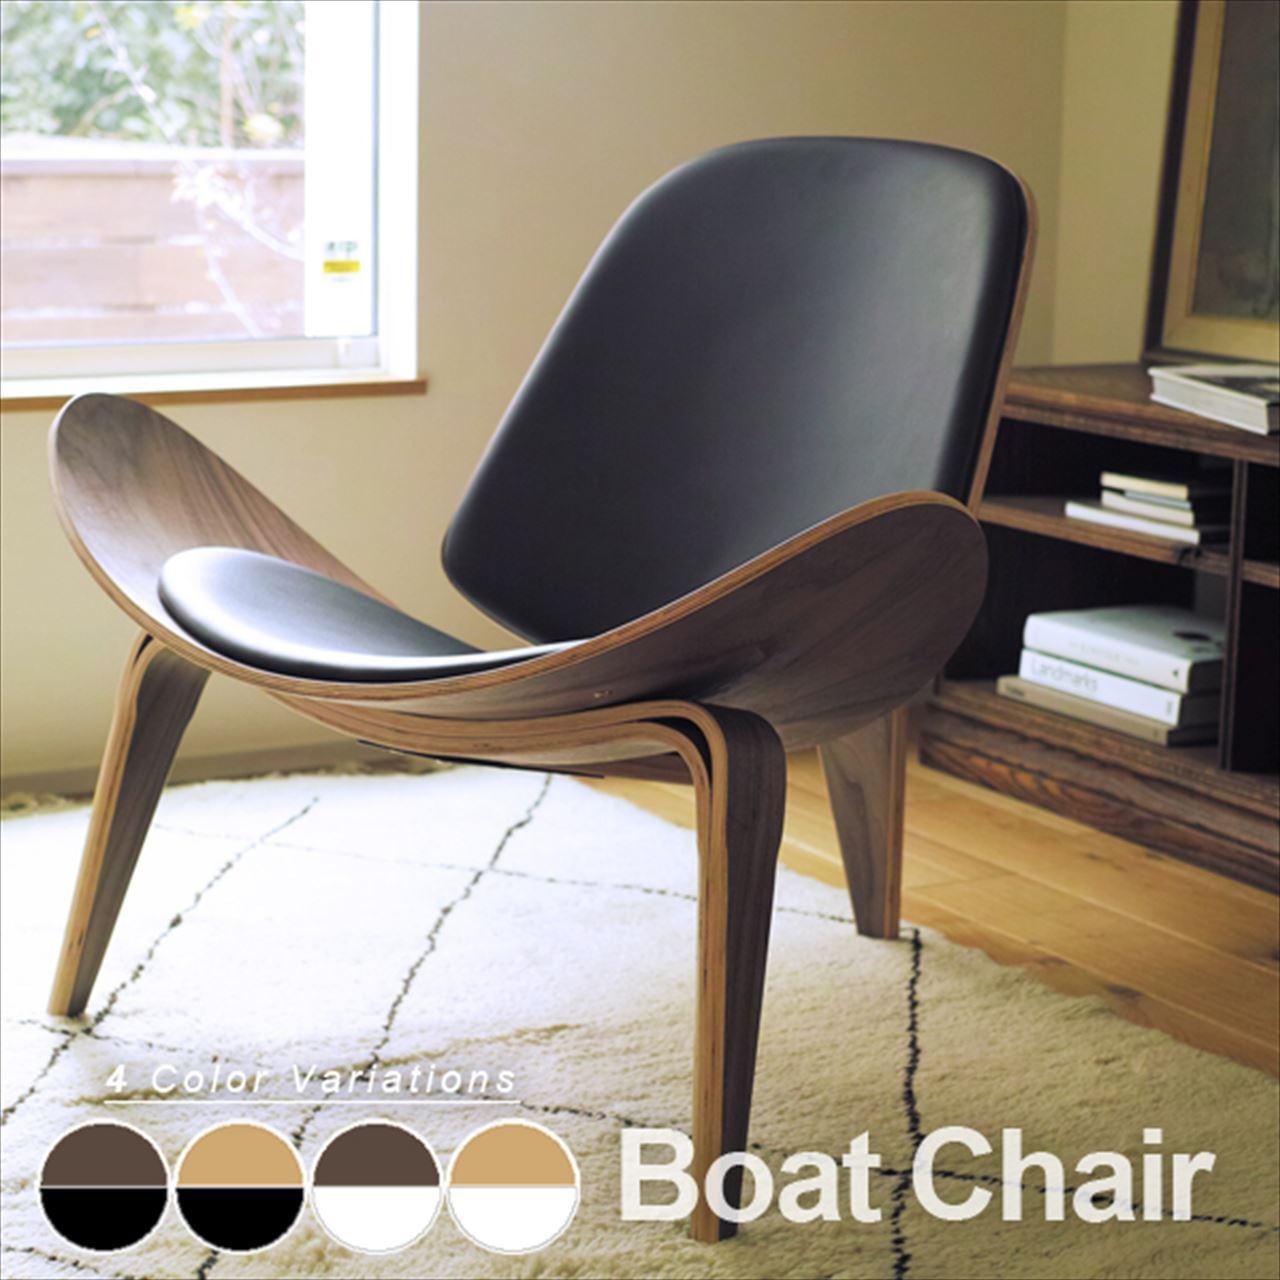 ボートチェア 木製 成形合板 イージーチェア デザイナーズ椅子 リ